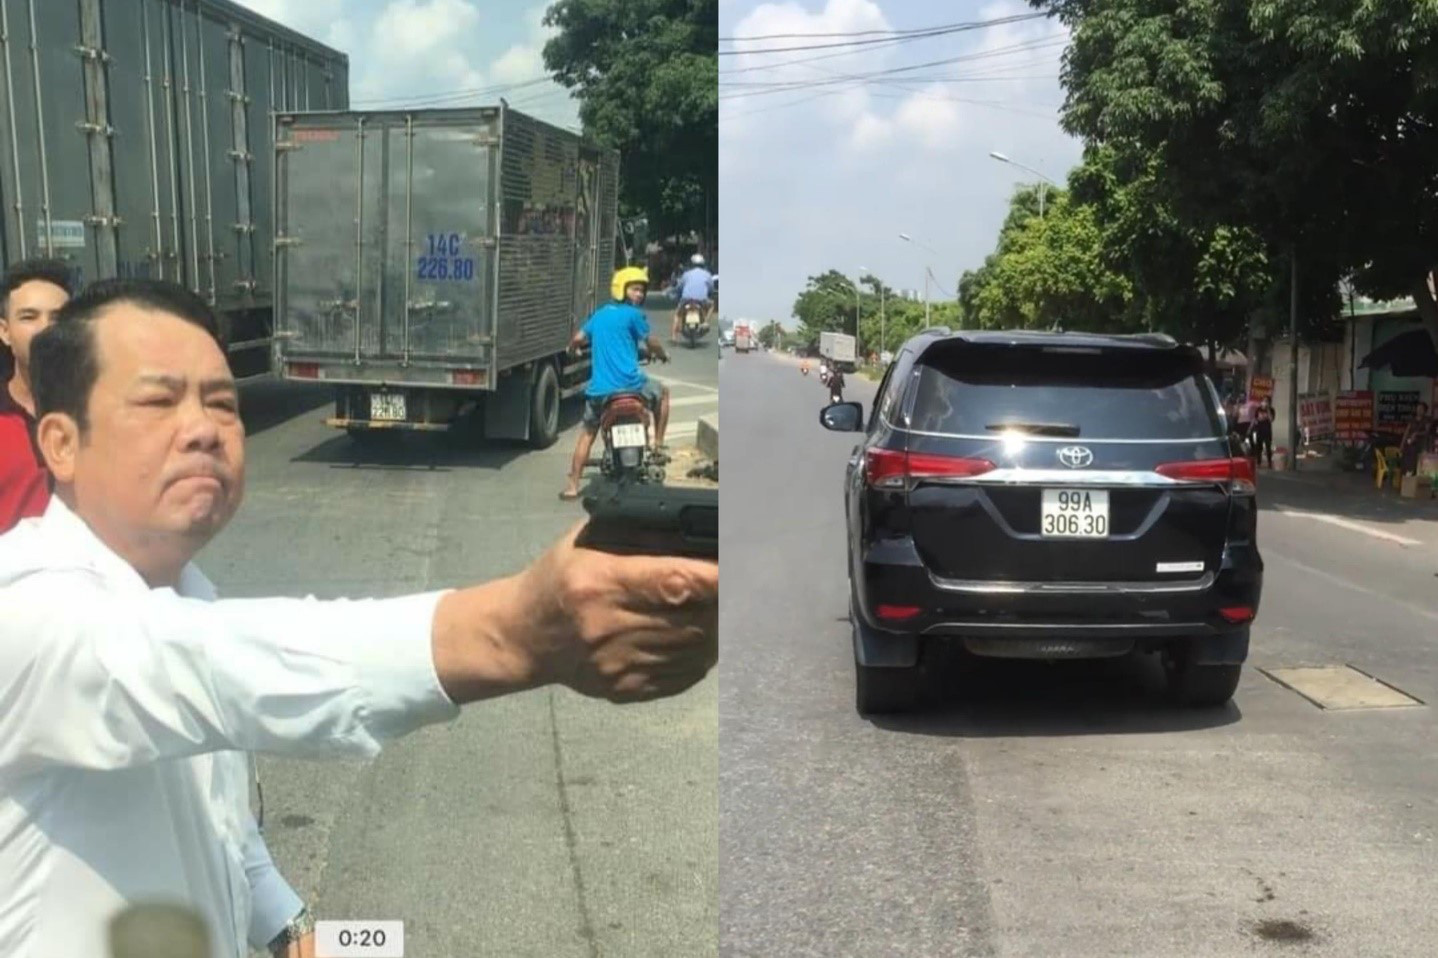 NÓNG: Triệu tập người đàn ông dùng súng đe doạ tài xế xe tải ở Bắc Ninh - Ảnh 1.